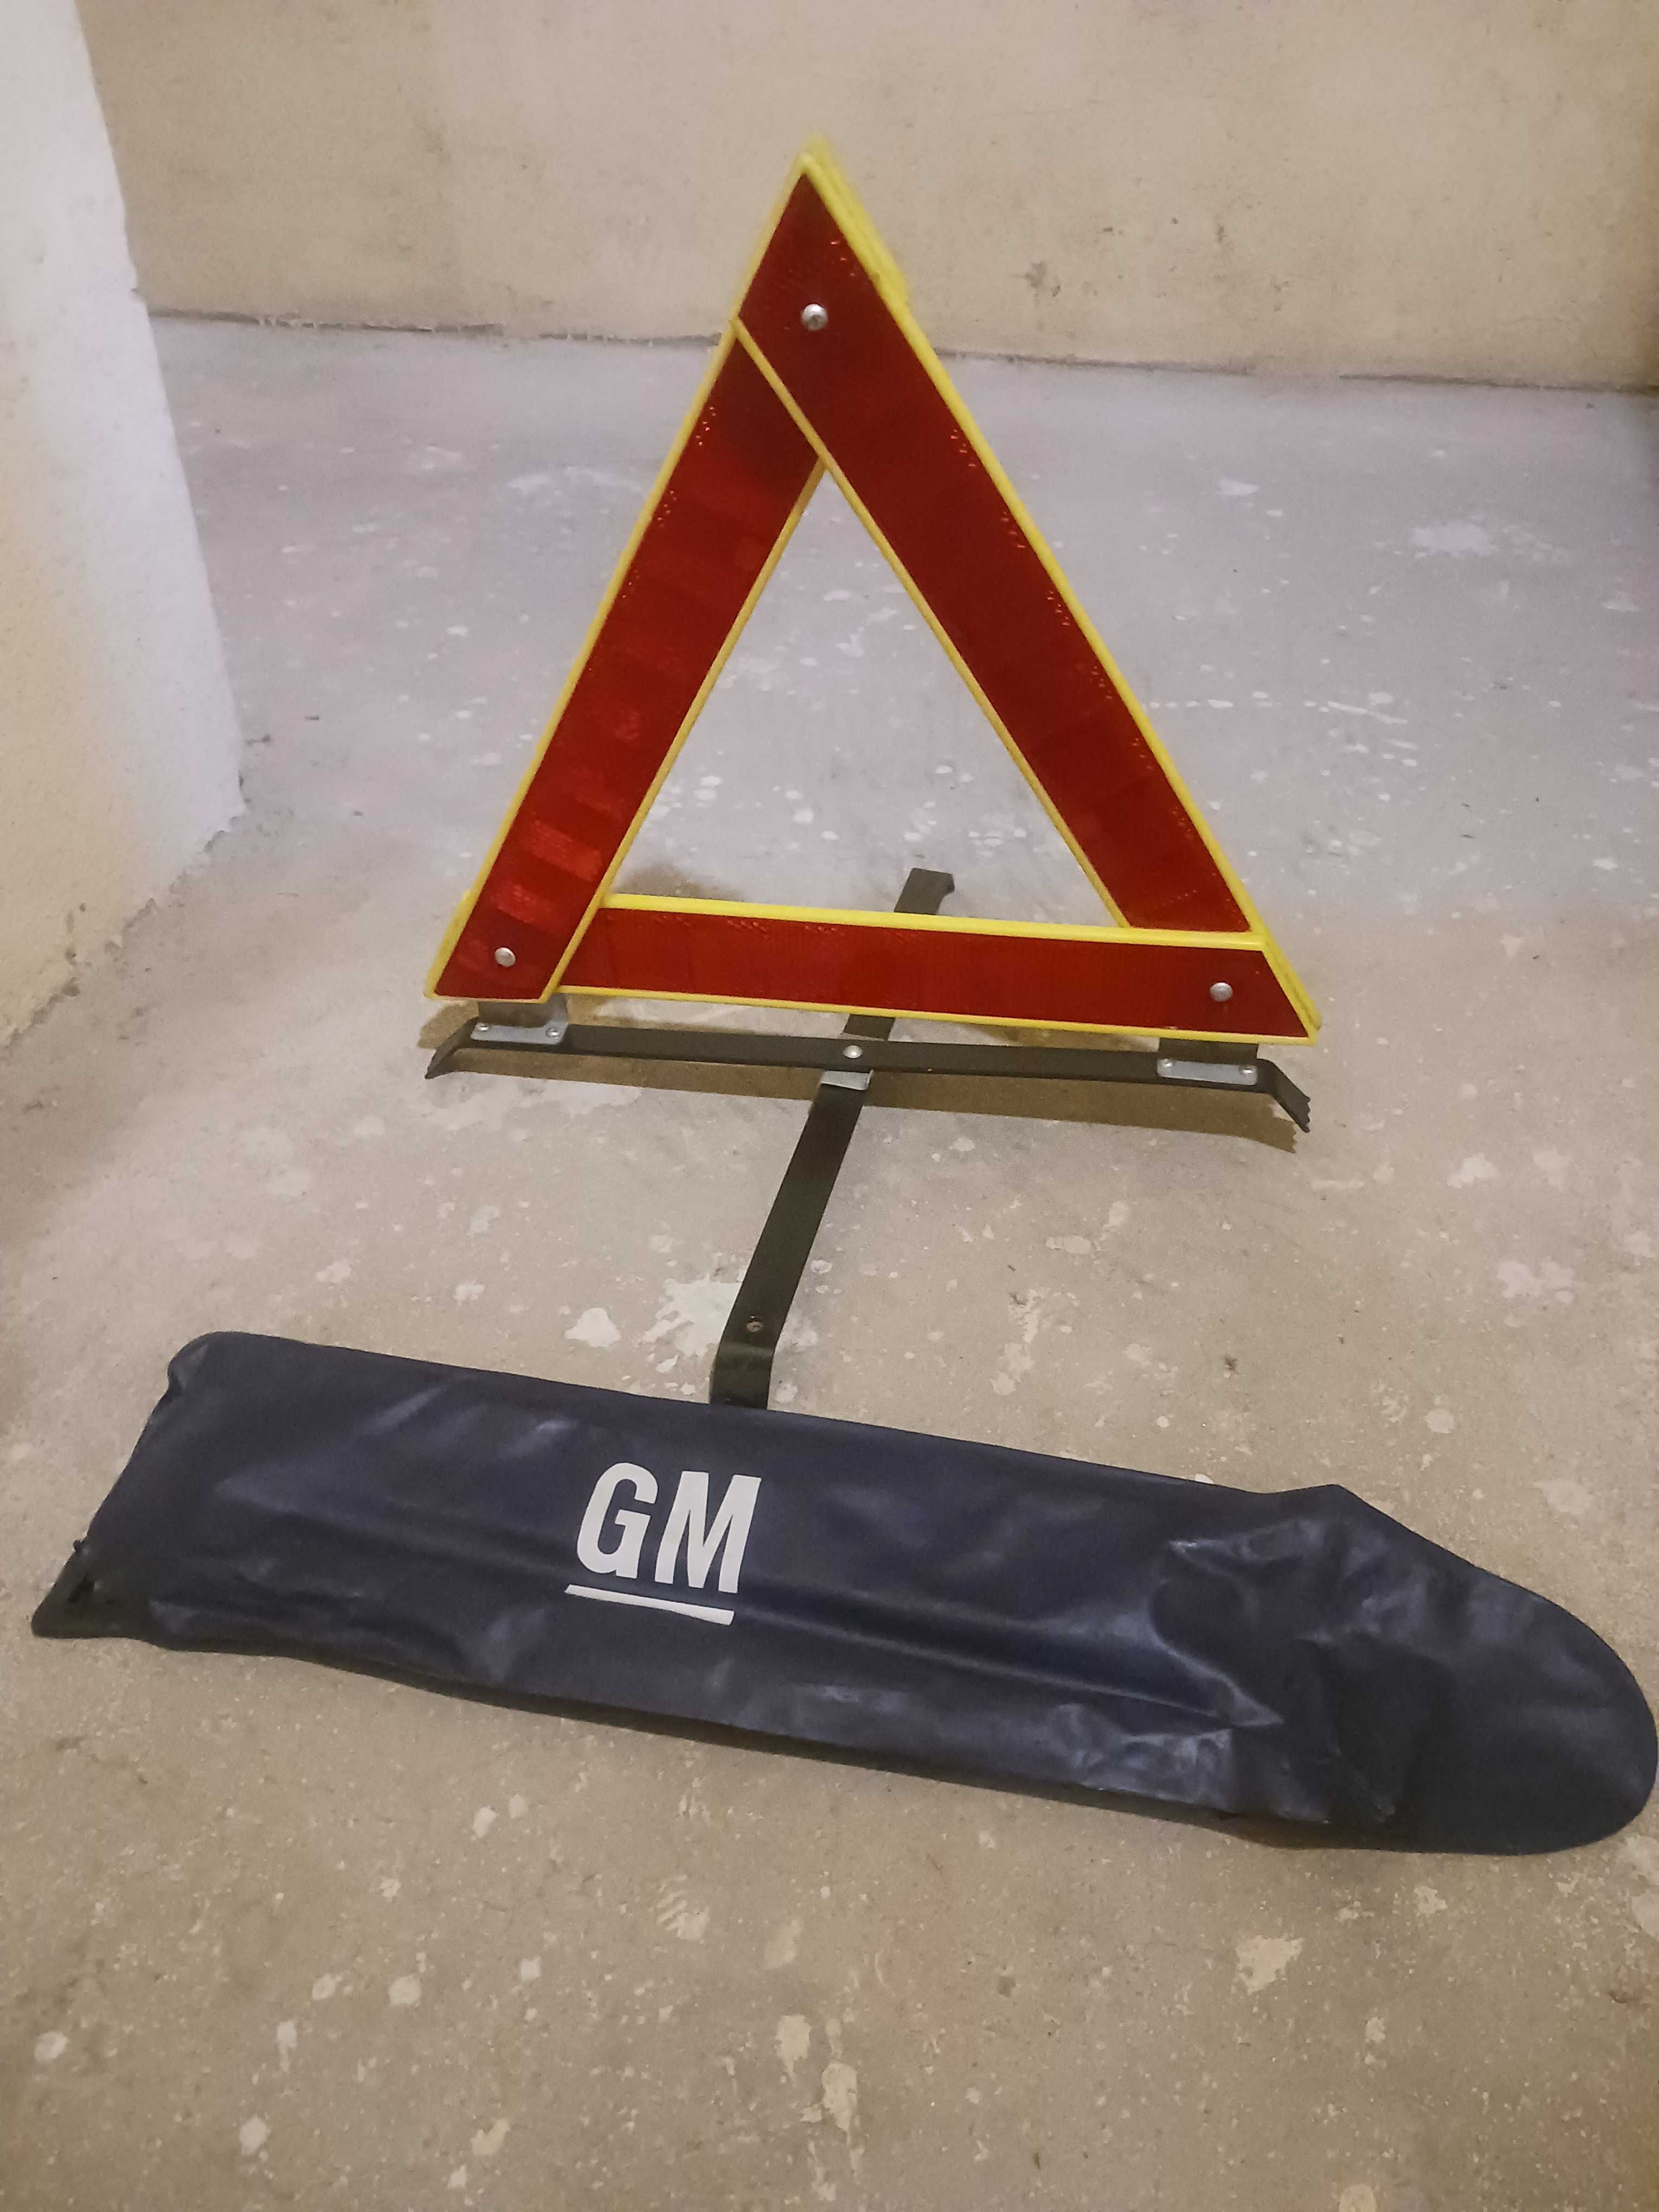 GM Triângulo de Segurança